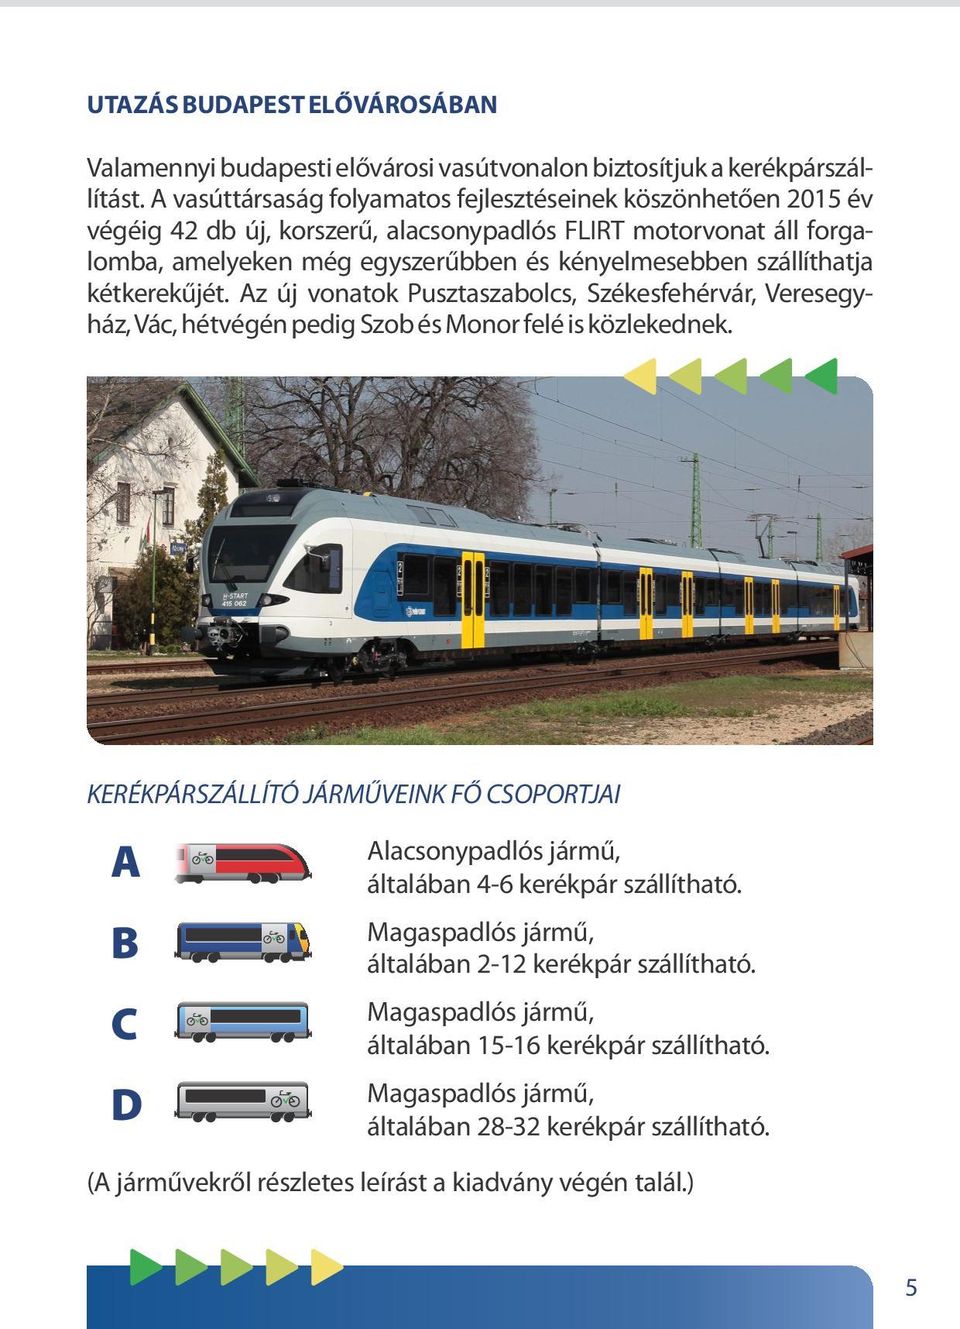 szállíthatja kétkerekűjét. Az új vonatok Pusztaszabolcs, Székesfehérvár, Veresegyház, Vác, hétvégén pedig Szob és Monor felé is közlekednek.